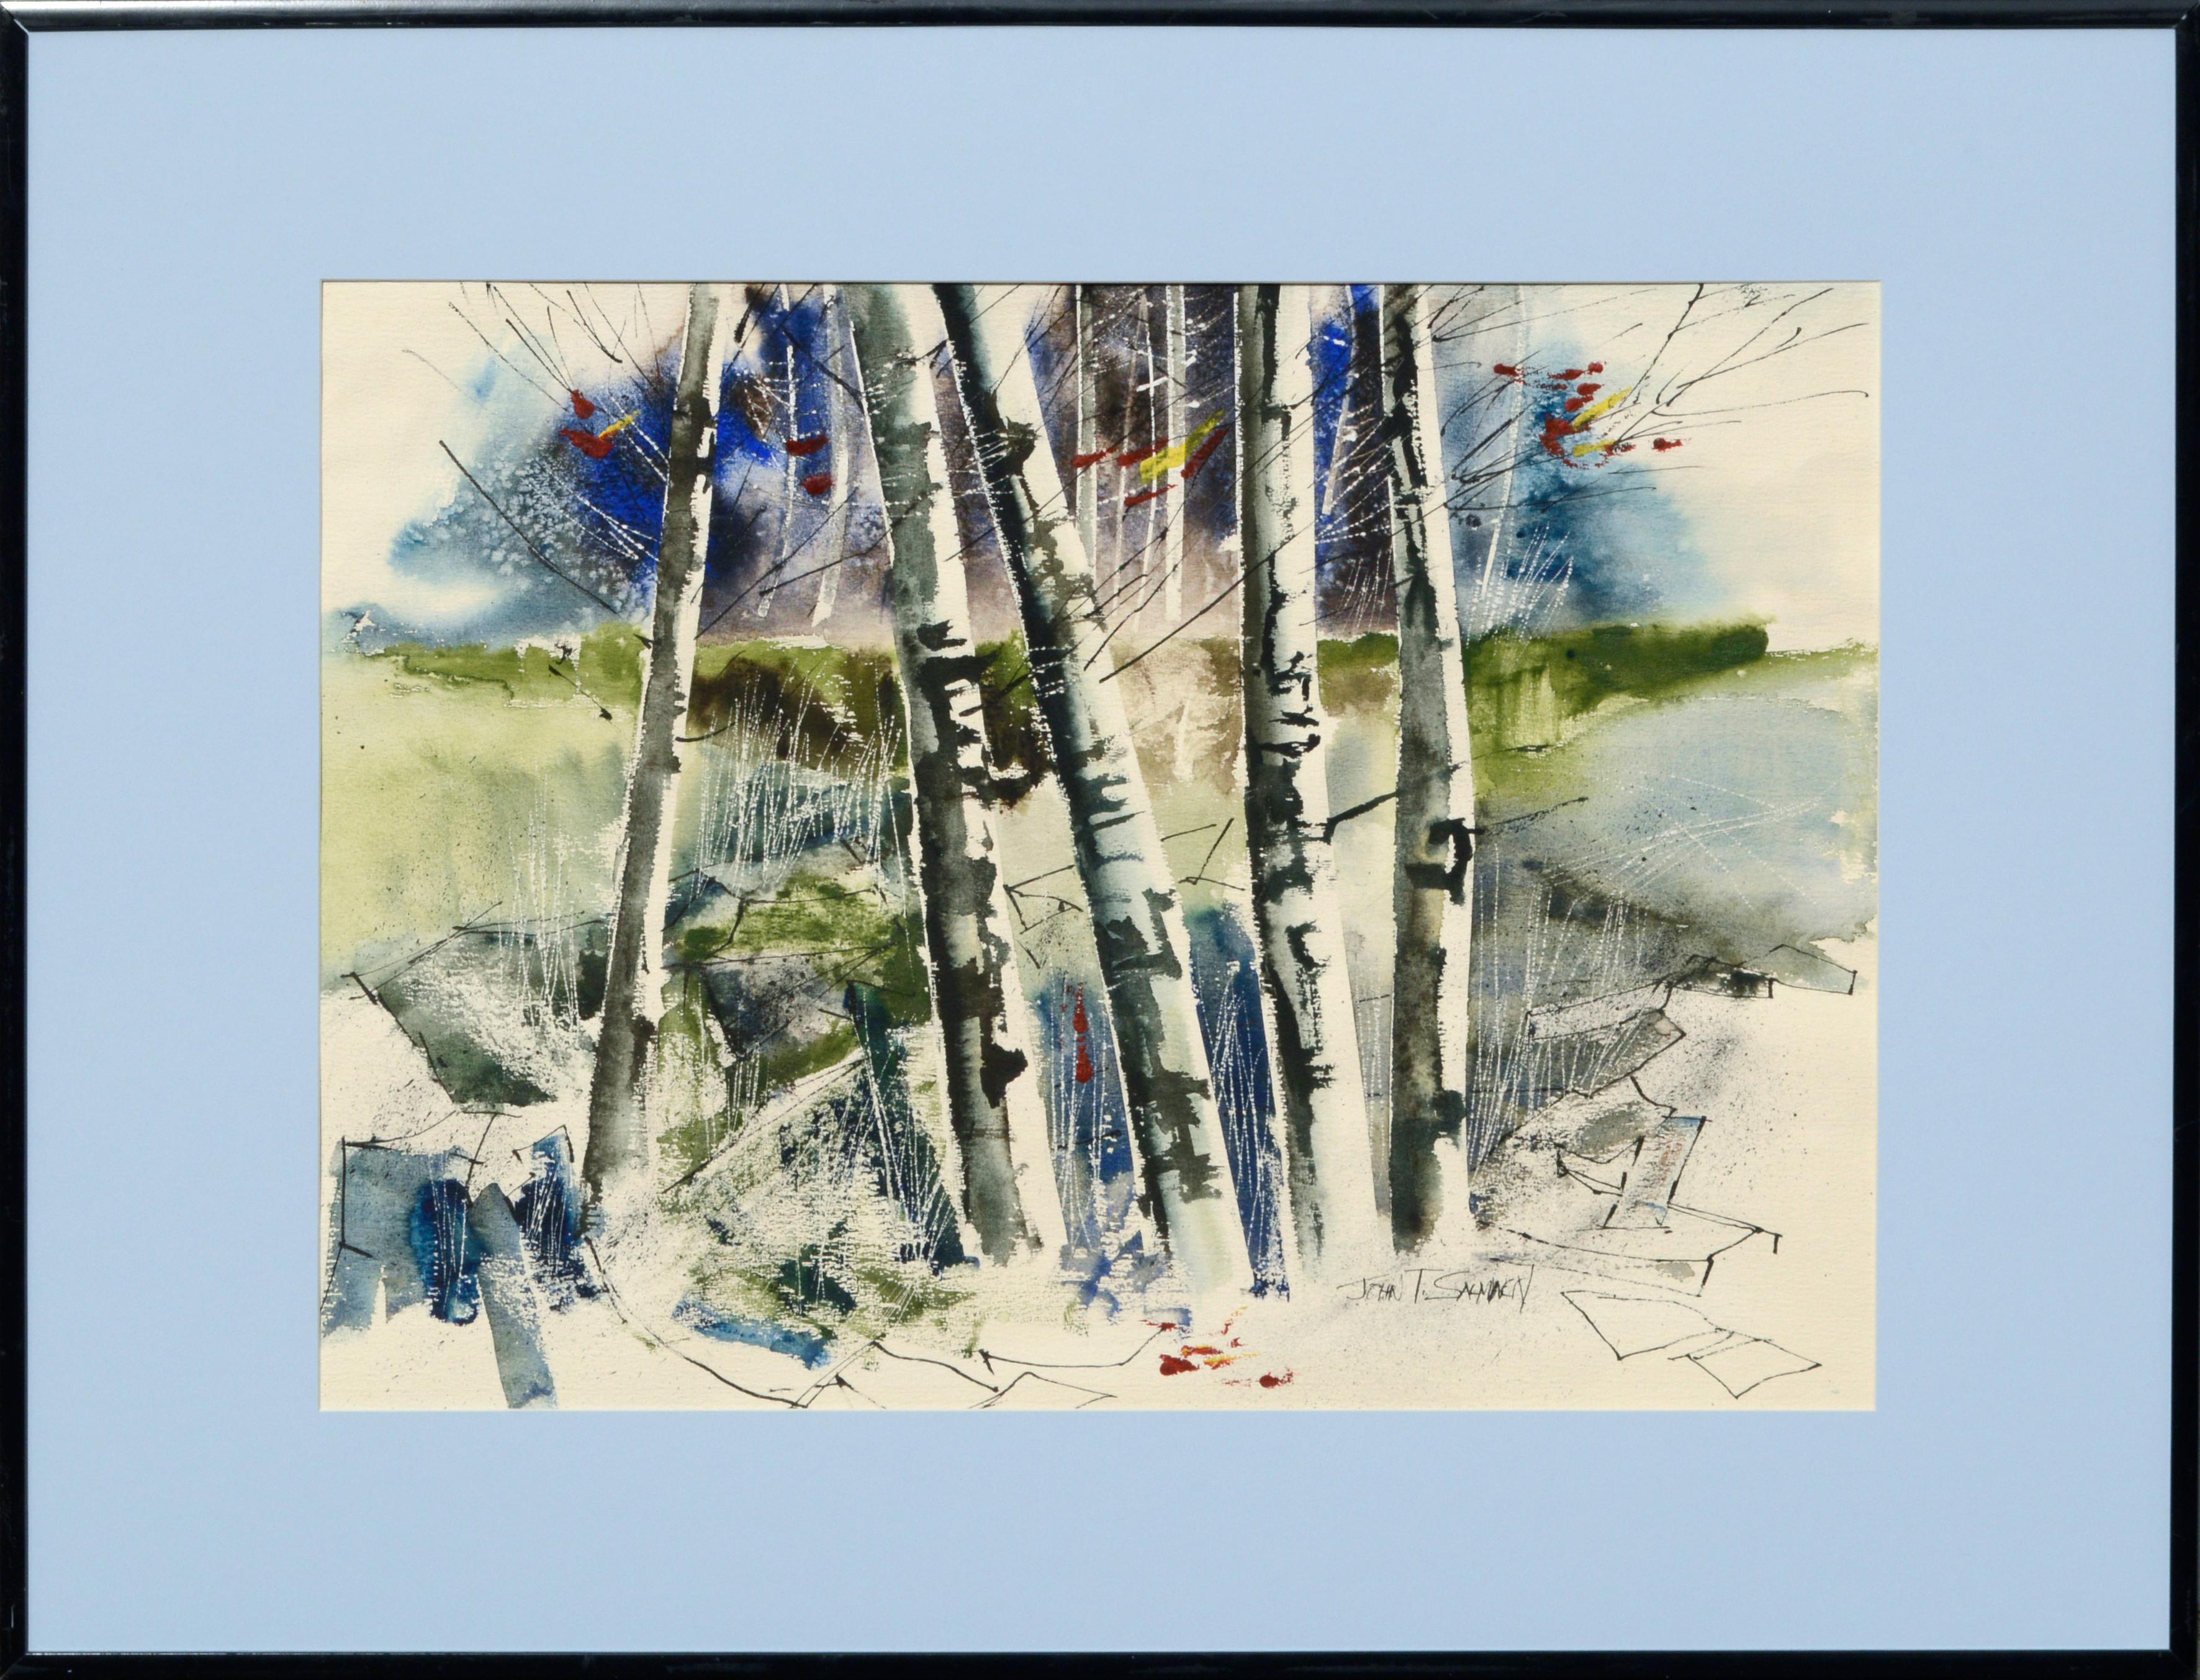 John T. Salminen Landscape Art - Birch Trees - Landscape in Watercolor on Paper by John Salminen